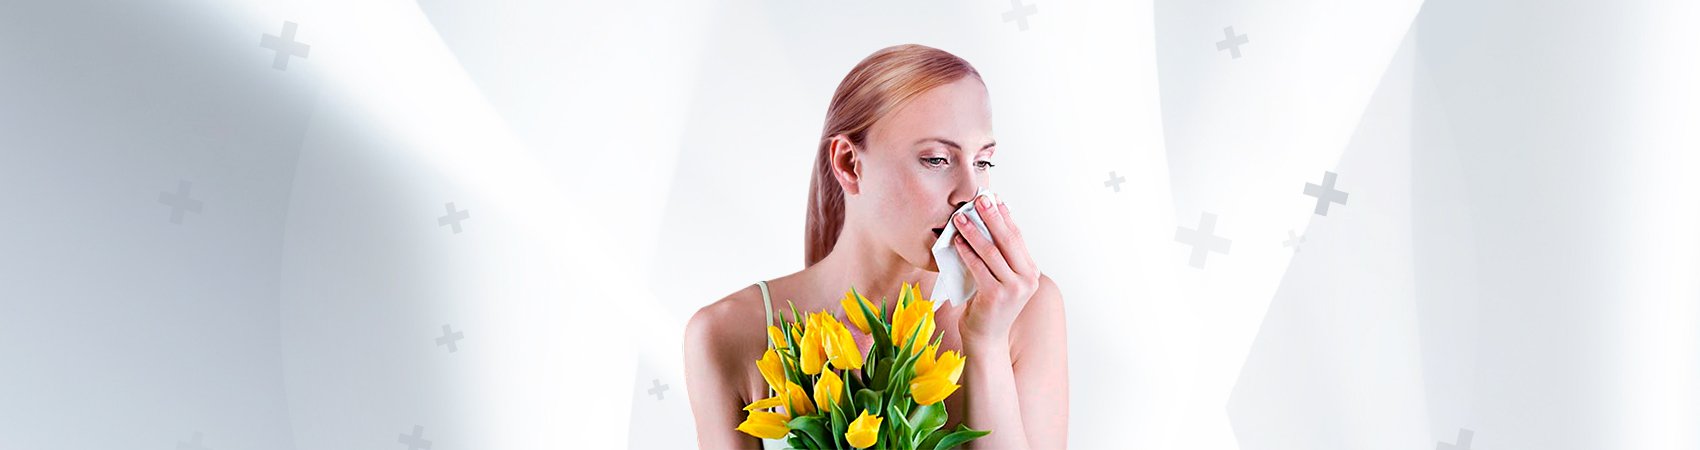 ОБЪЯВЛЯЕМ НЕДЕЛЮ БОРЬБЫ С АЛЛЕРГИЕЙ   Анализ на 5 видов аллергенов всего 1500 руб.